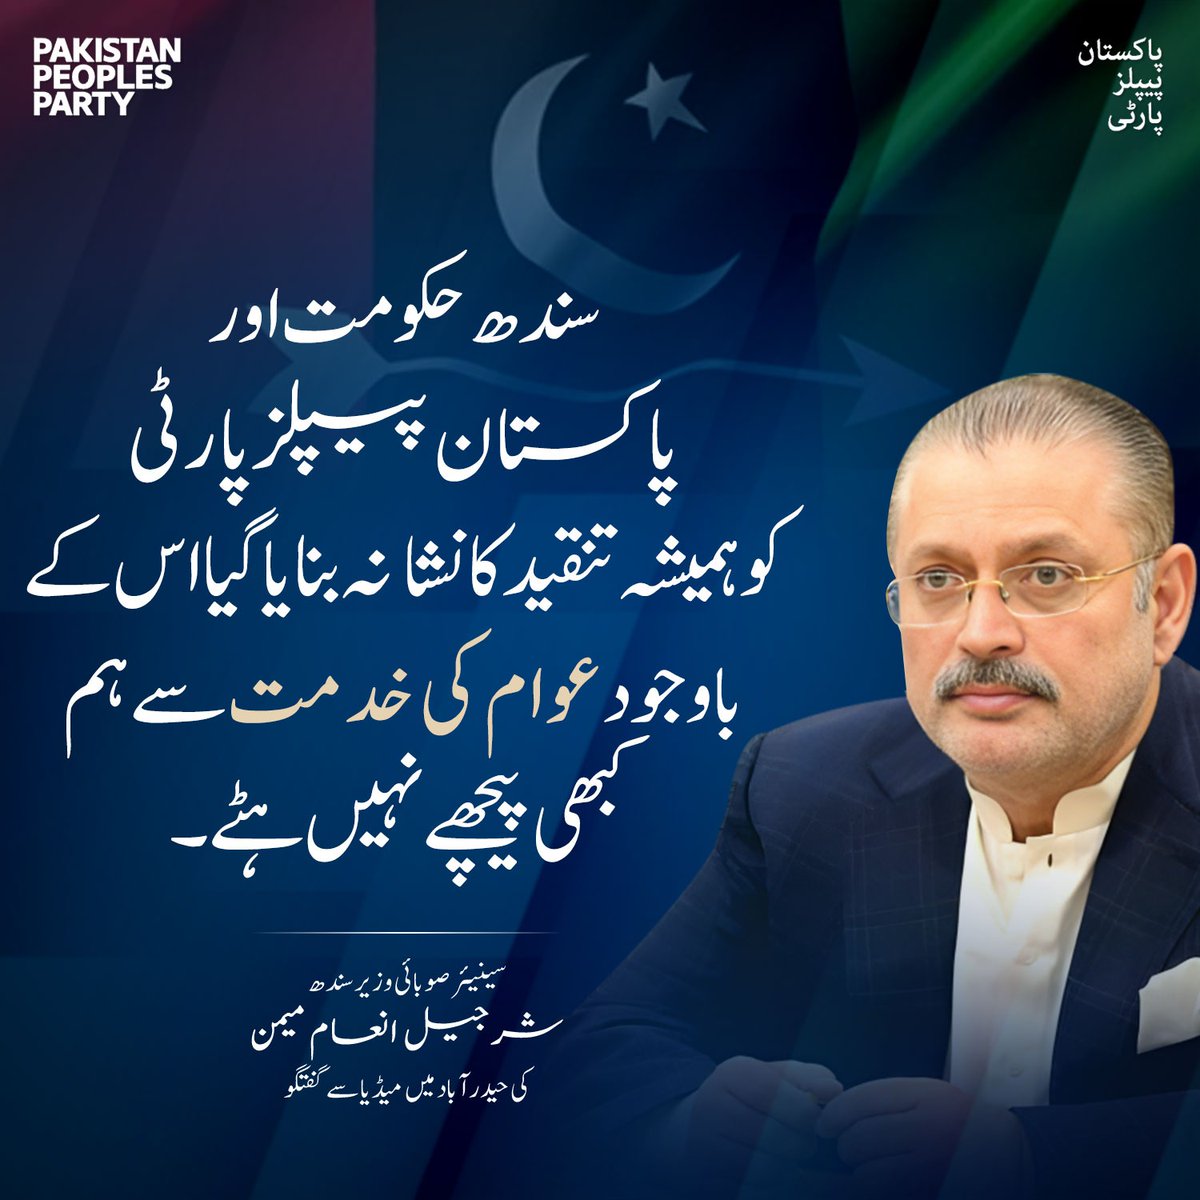 سندھ حکومت اور پیپلز پارٹی کو ہمیشہ تنقید کا نشانہ بنایا گیا اس کے باوجود عوام کی خدمت سے ہم کبھی پیچھے نہیں ہٹے۔ سینئر صوبائی وزیر شرجیل انعام میمن @sharjeelinam